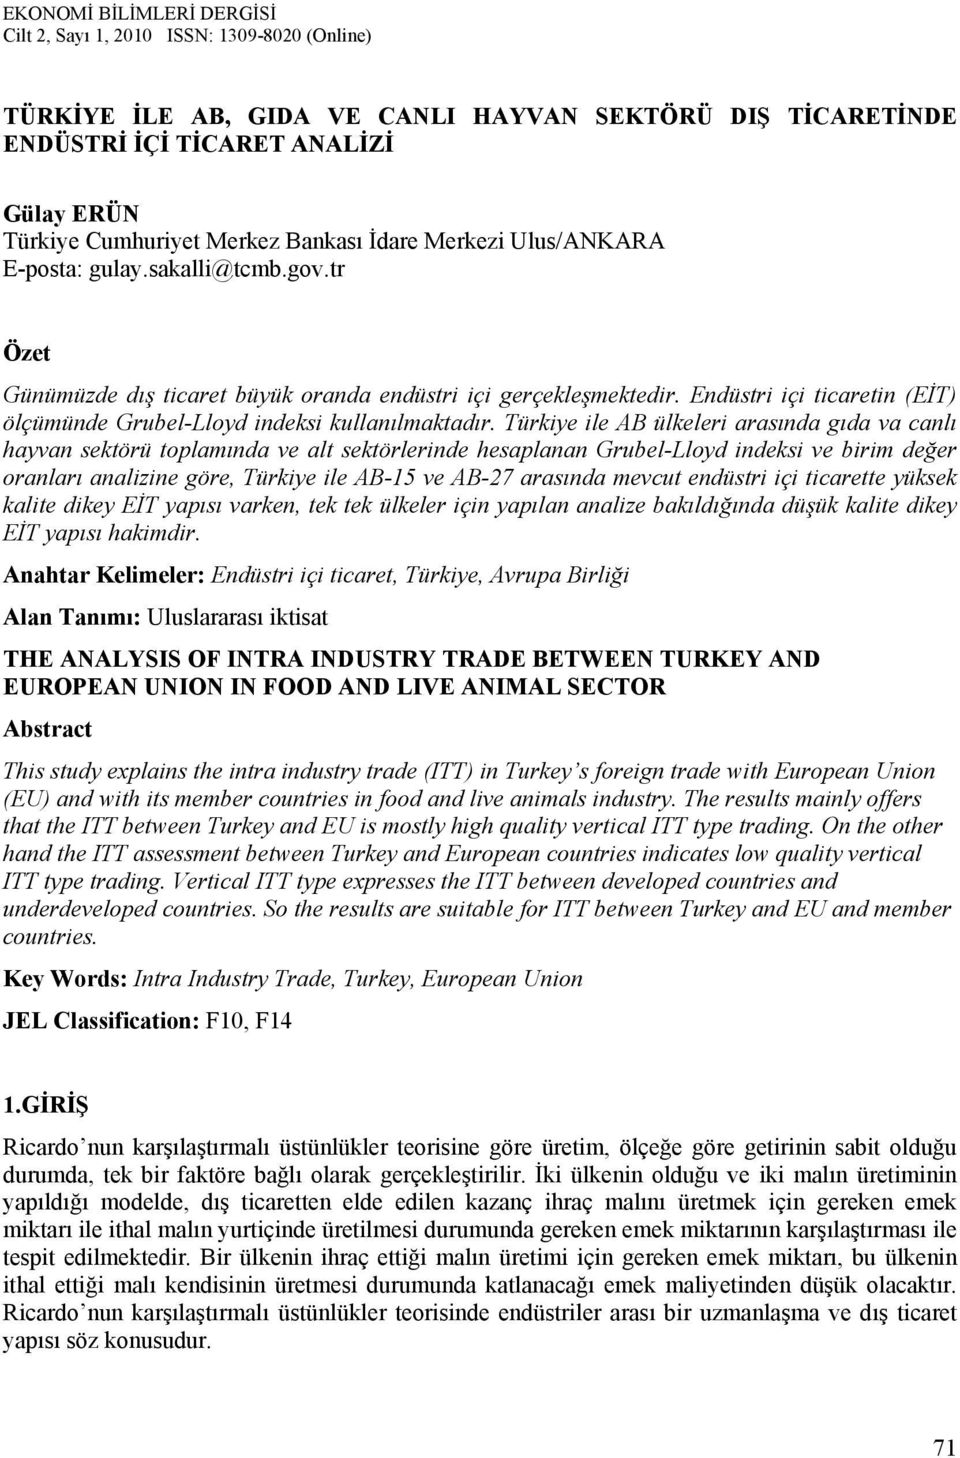 Türkiye ile AB ülkeleri arasında gıda va canlı hayvan sektörü toplamında ve alt sektörlerinde hesaplanan Grubel-Lloyd indeksi ve birim değer oranları analizine göre, Türkiye ile AB-15 ve AB-27